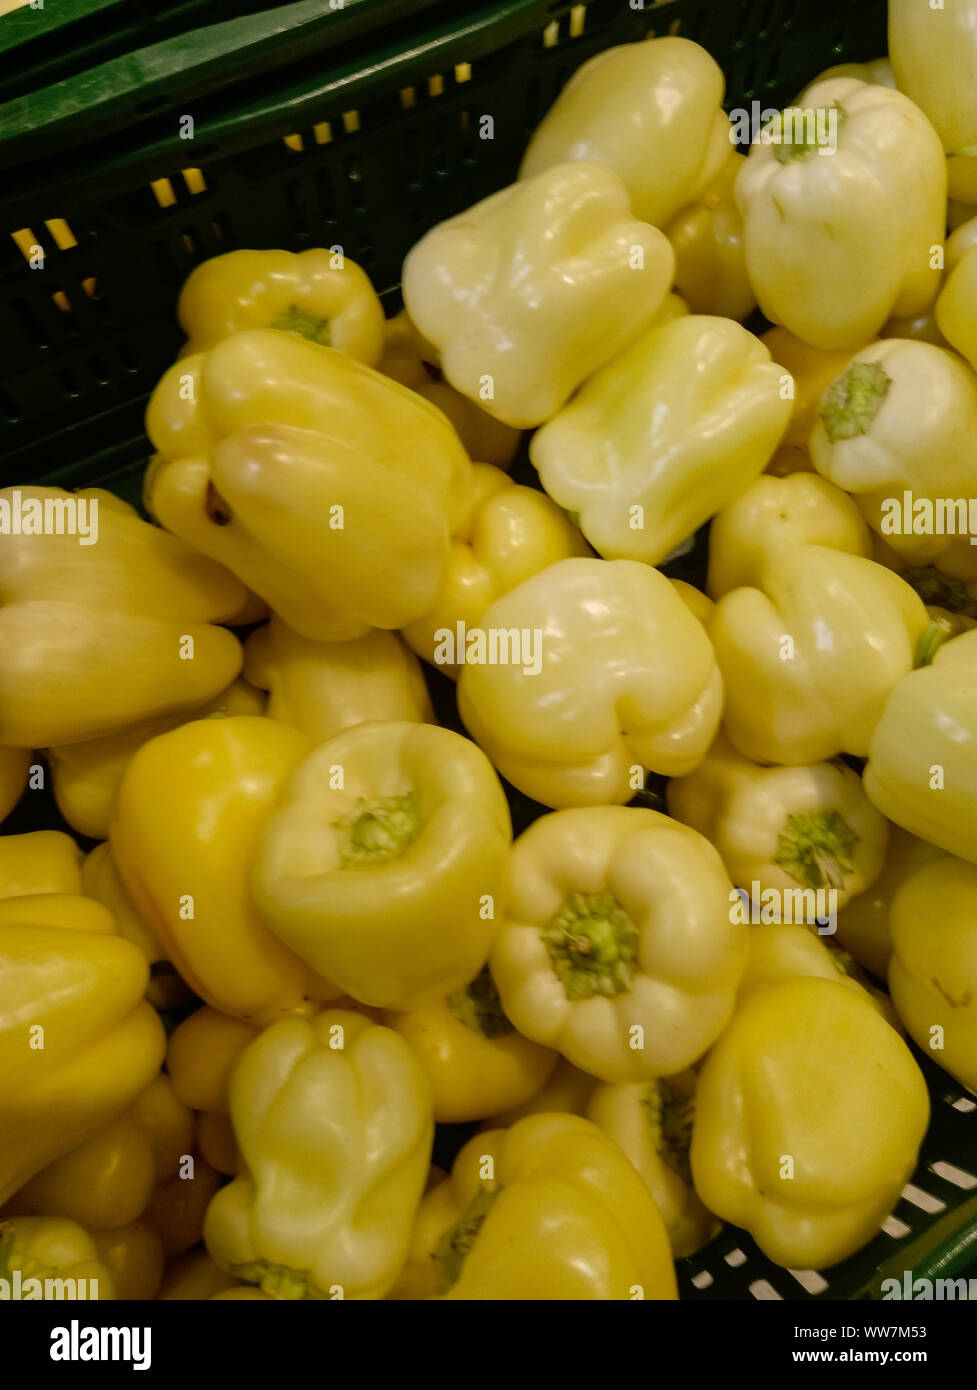 Peperone giallo ricco di vitamina dieta sana pianta vegetale naturale spezie organico in scaffale di supermercato, mercato contadino Foto Stock